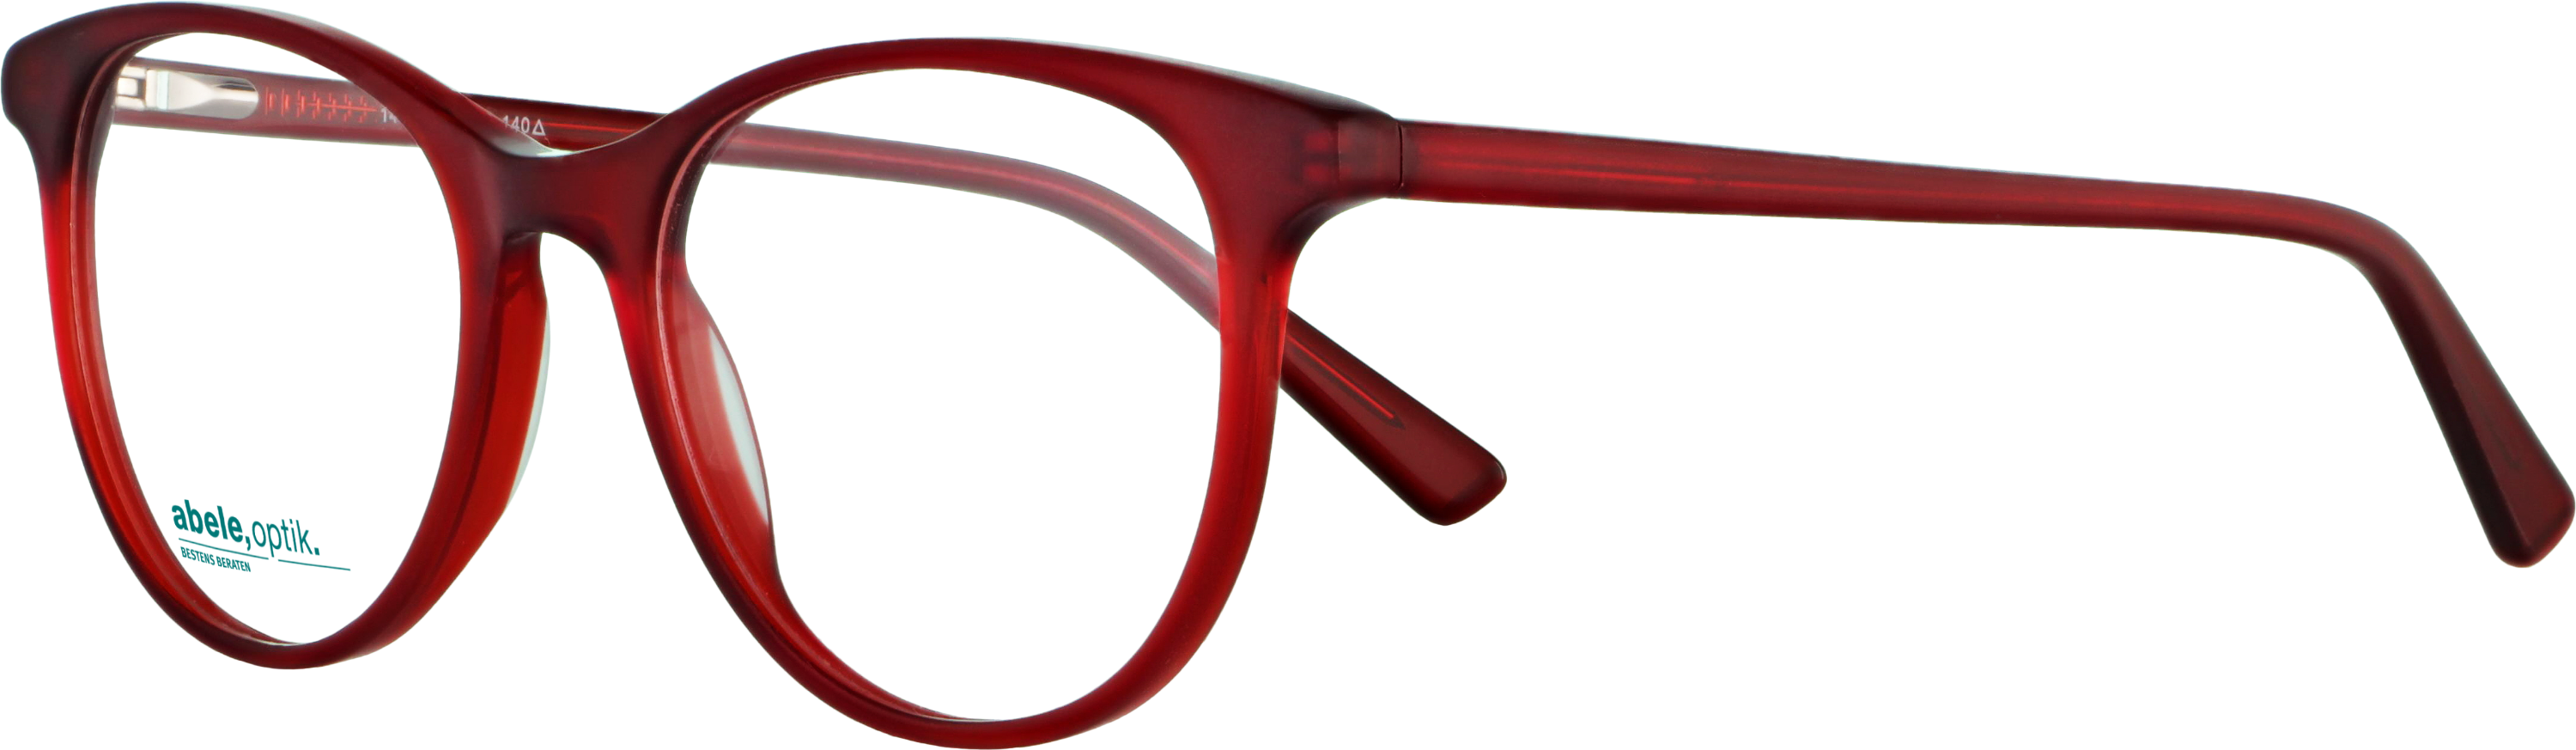 Das Bild zeigt die Korrektionsbrille 141901 von der Marke Abele Optik in rot matt.